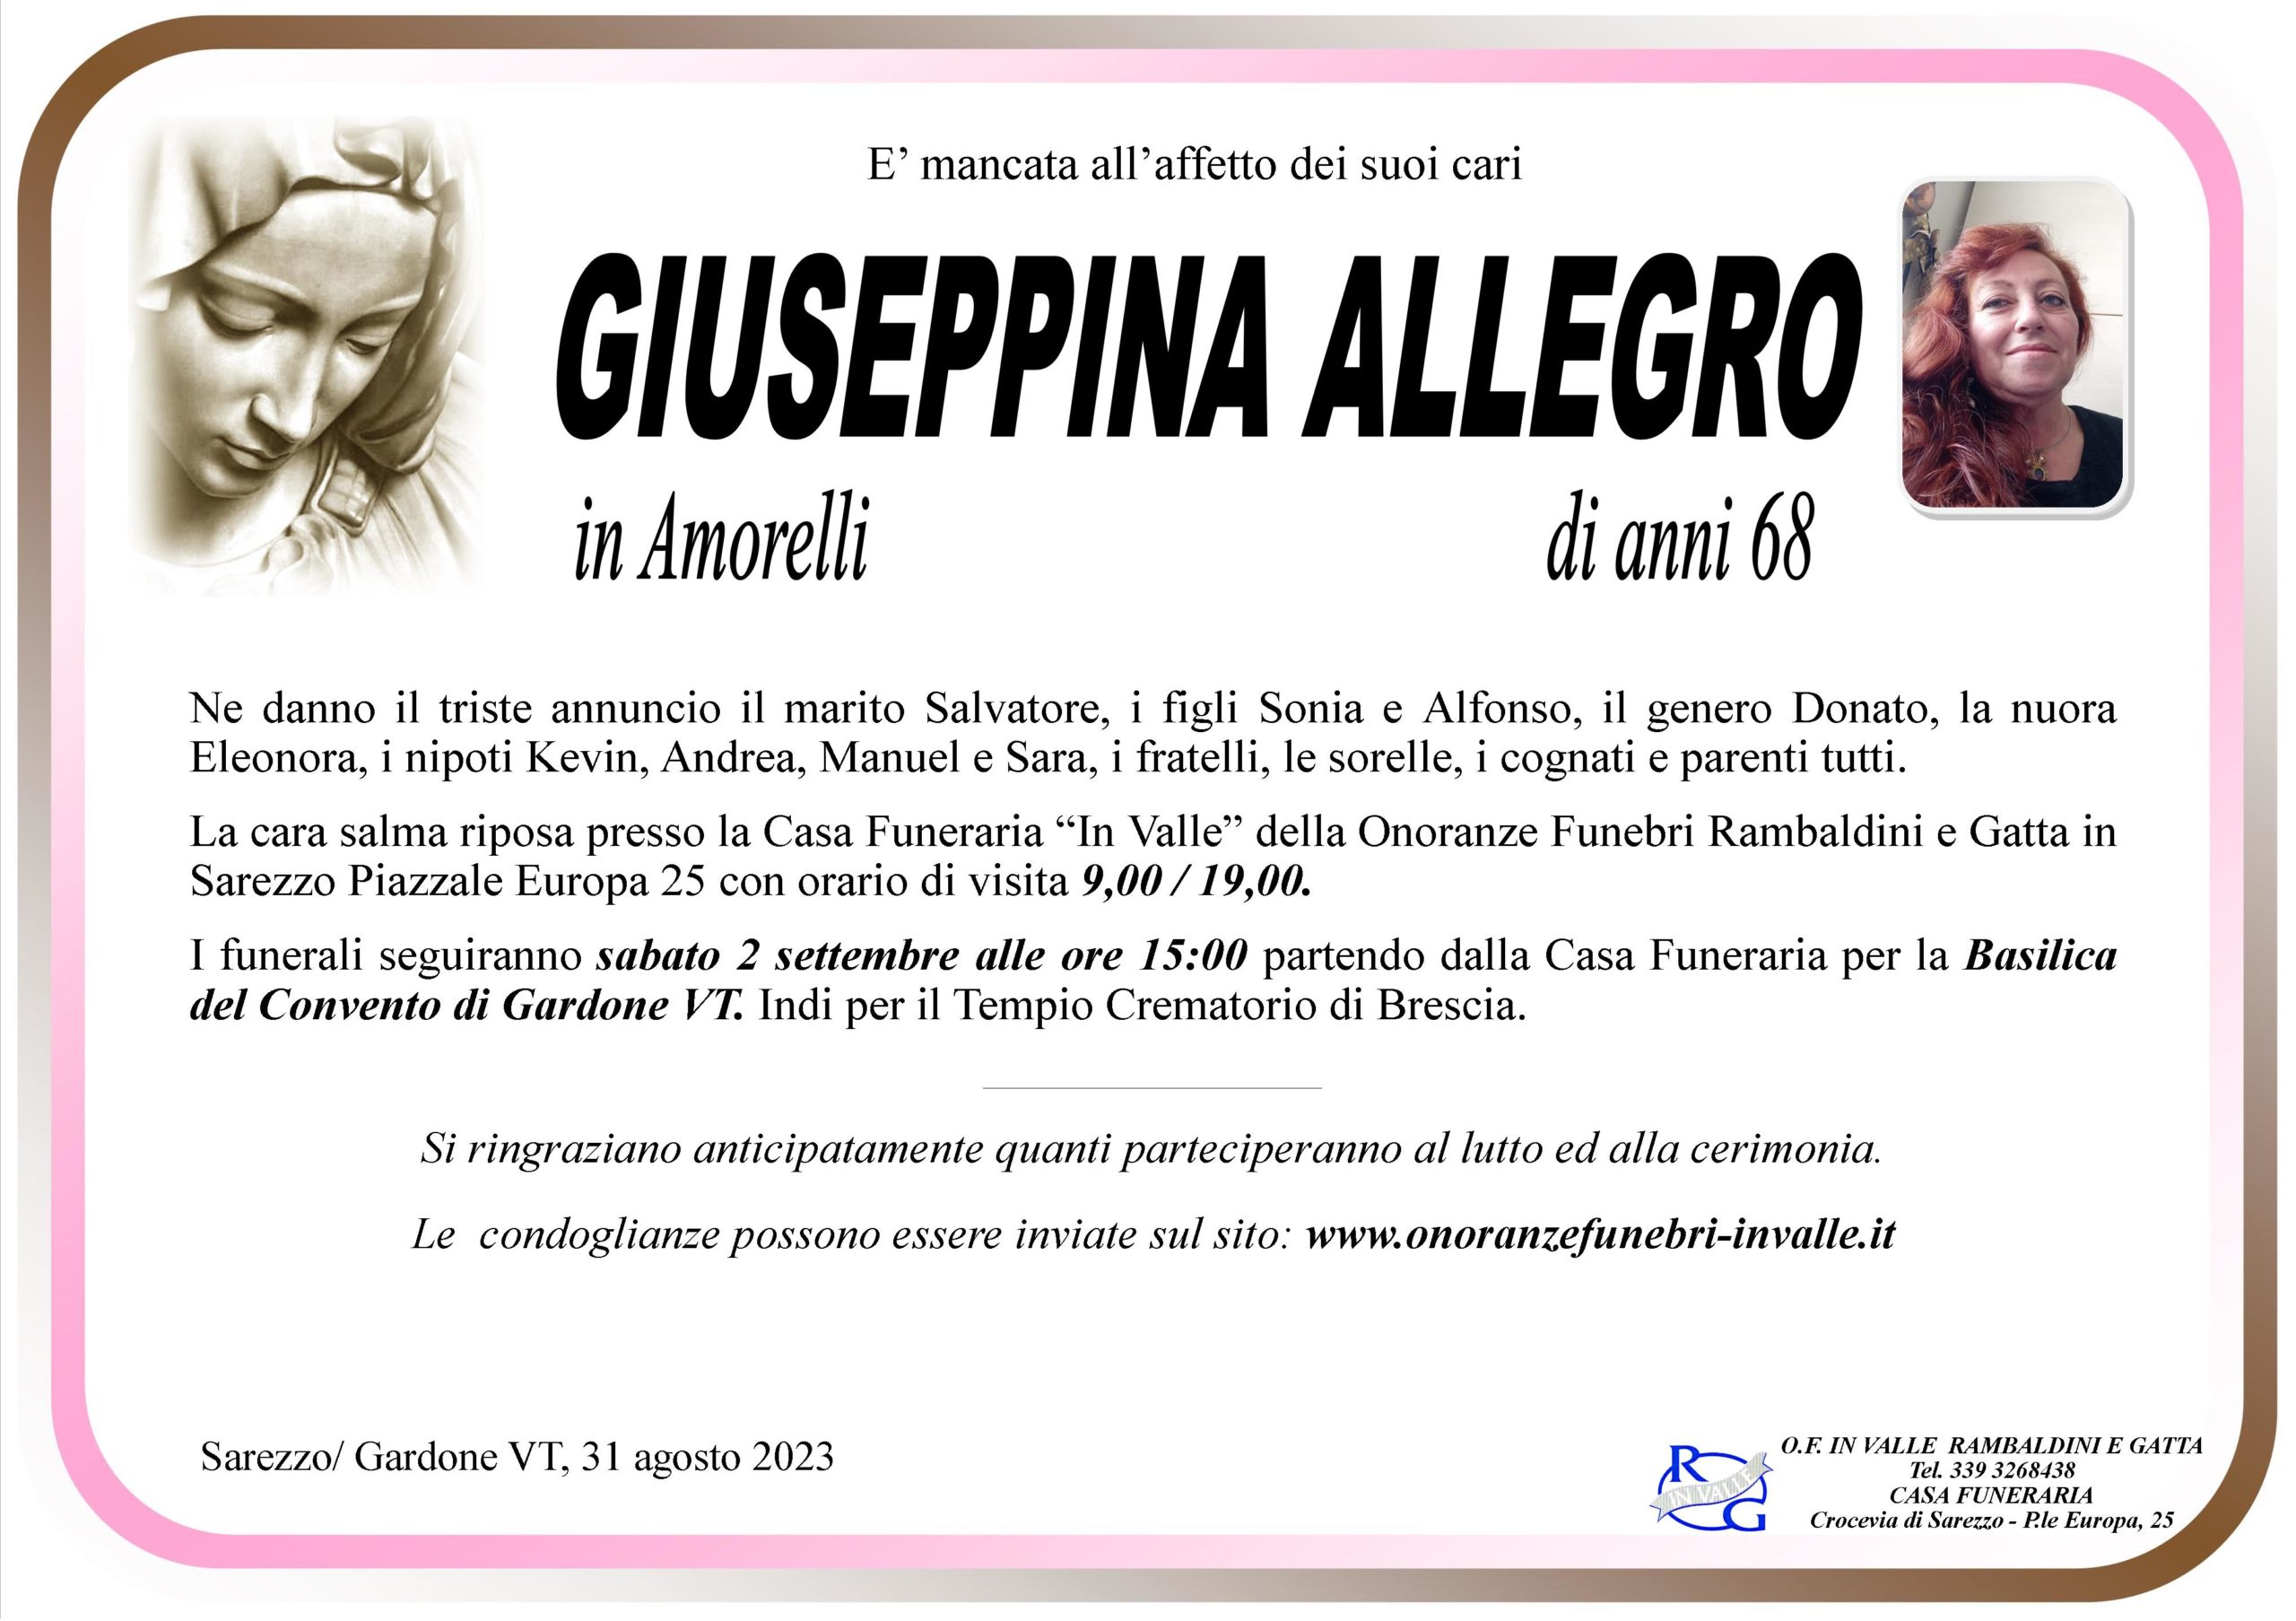 Al momento stai visualizzando Allegro Giuseppina